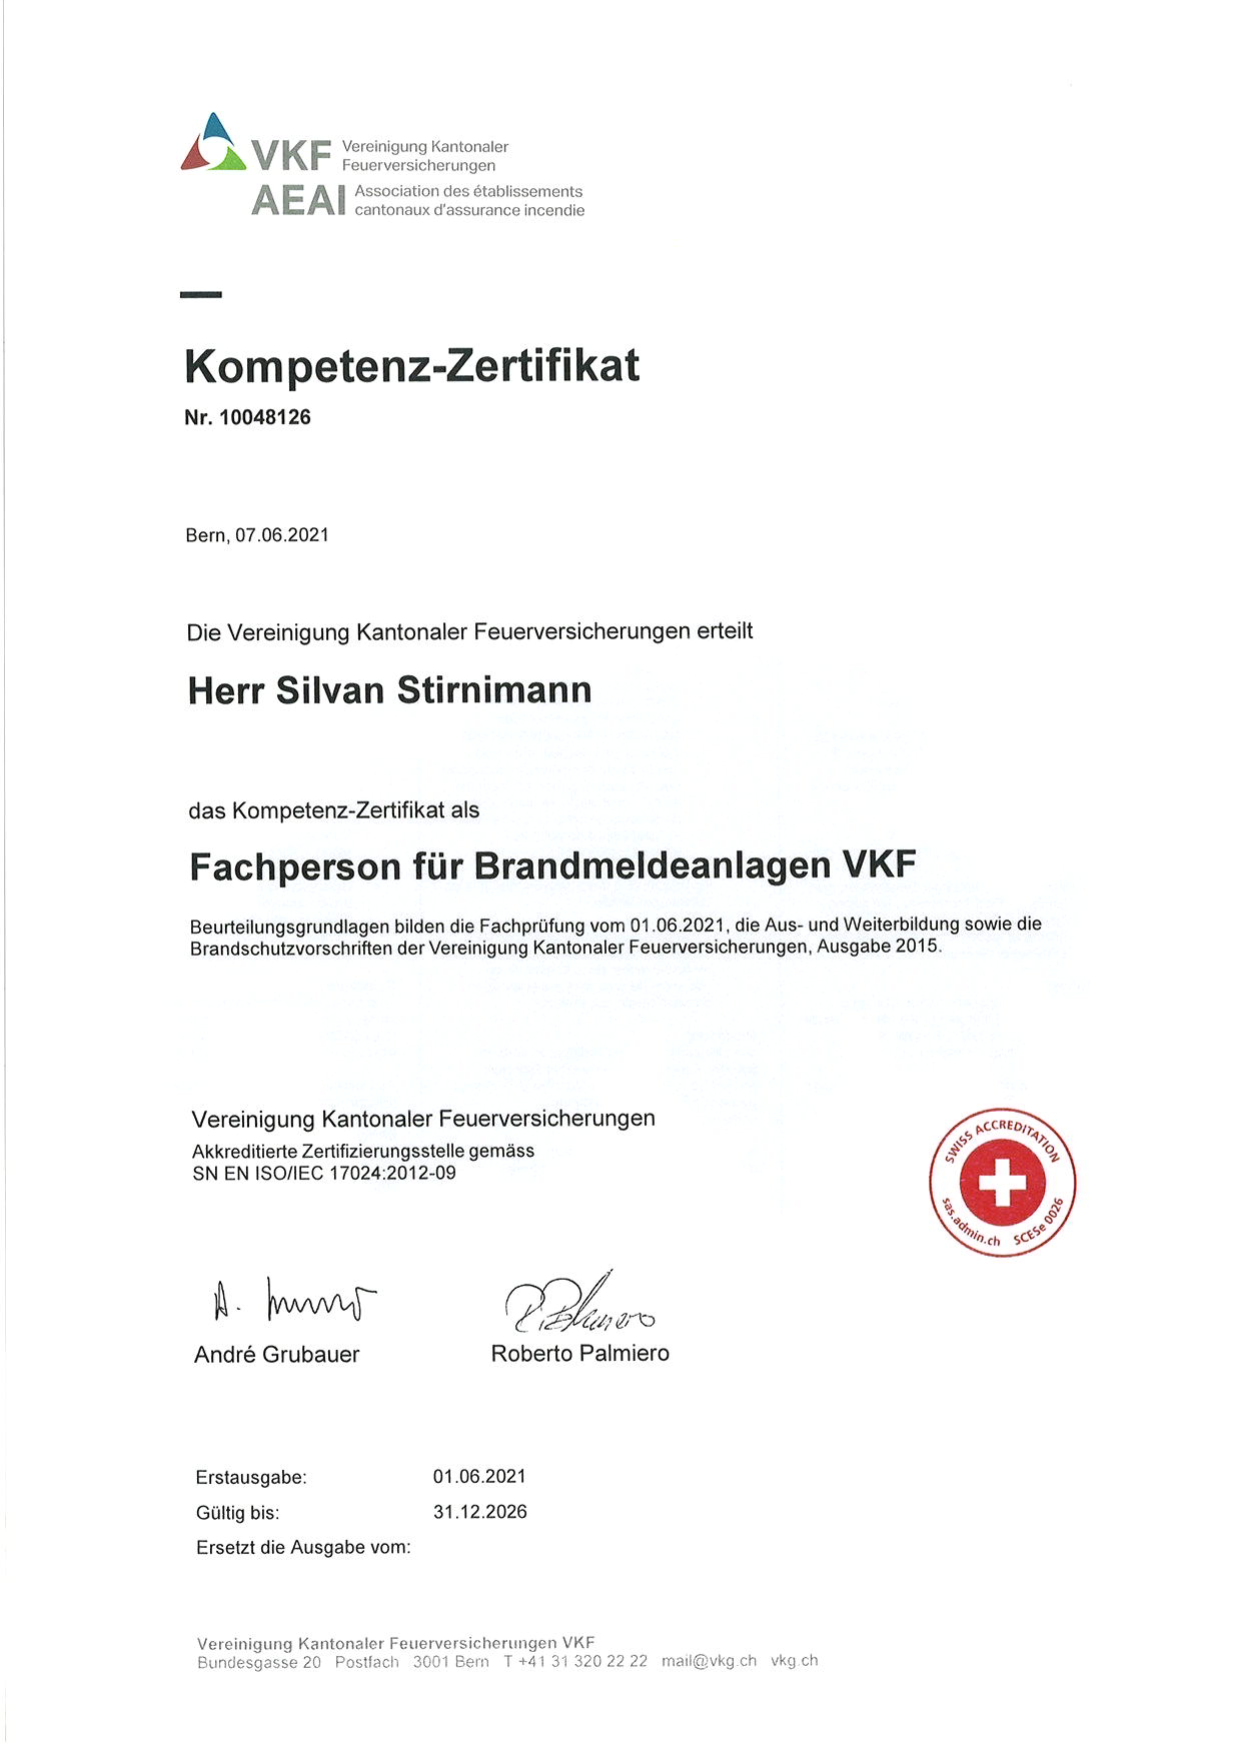 Stirnimann Silvan Kompetenz Zertifikat Fachperson für Brandmeldeanlagen VKF_1.png